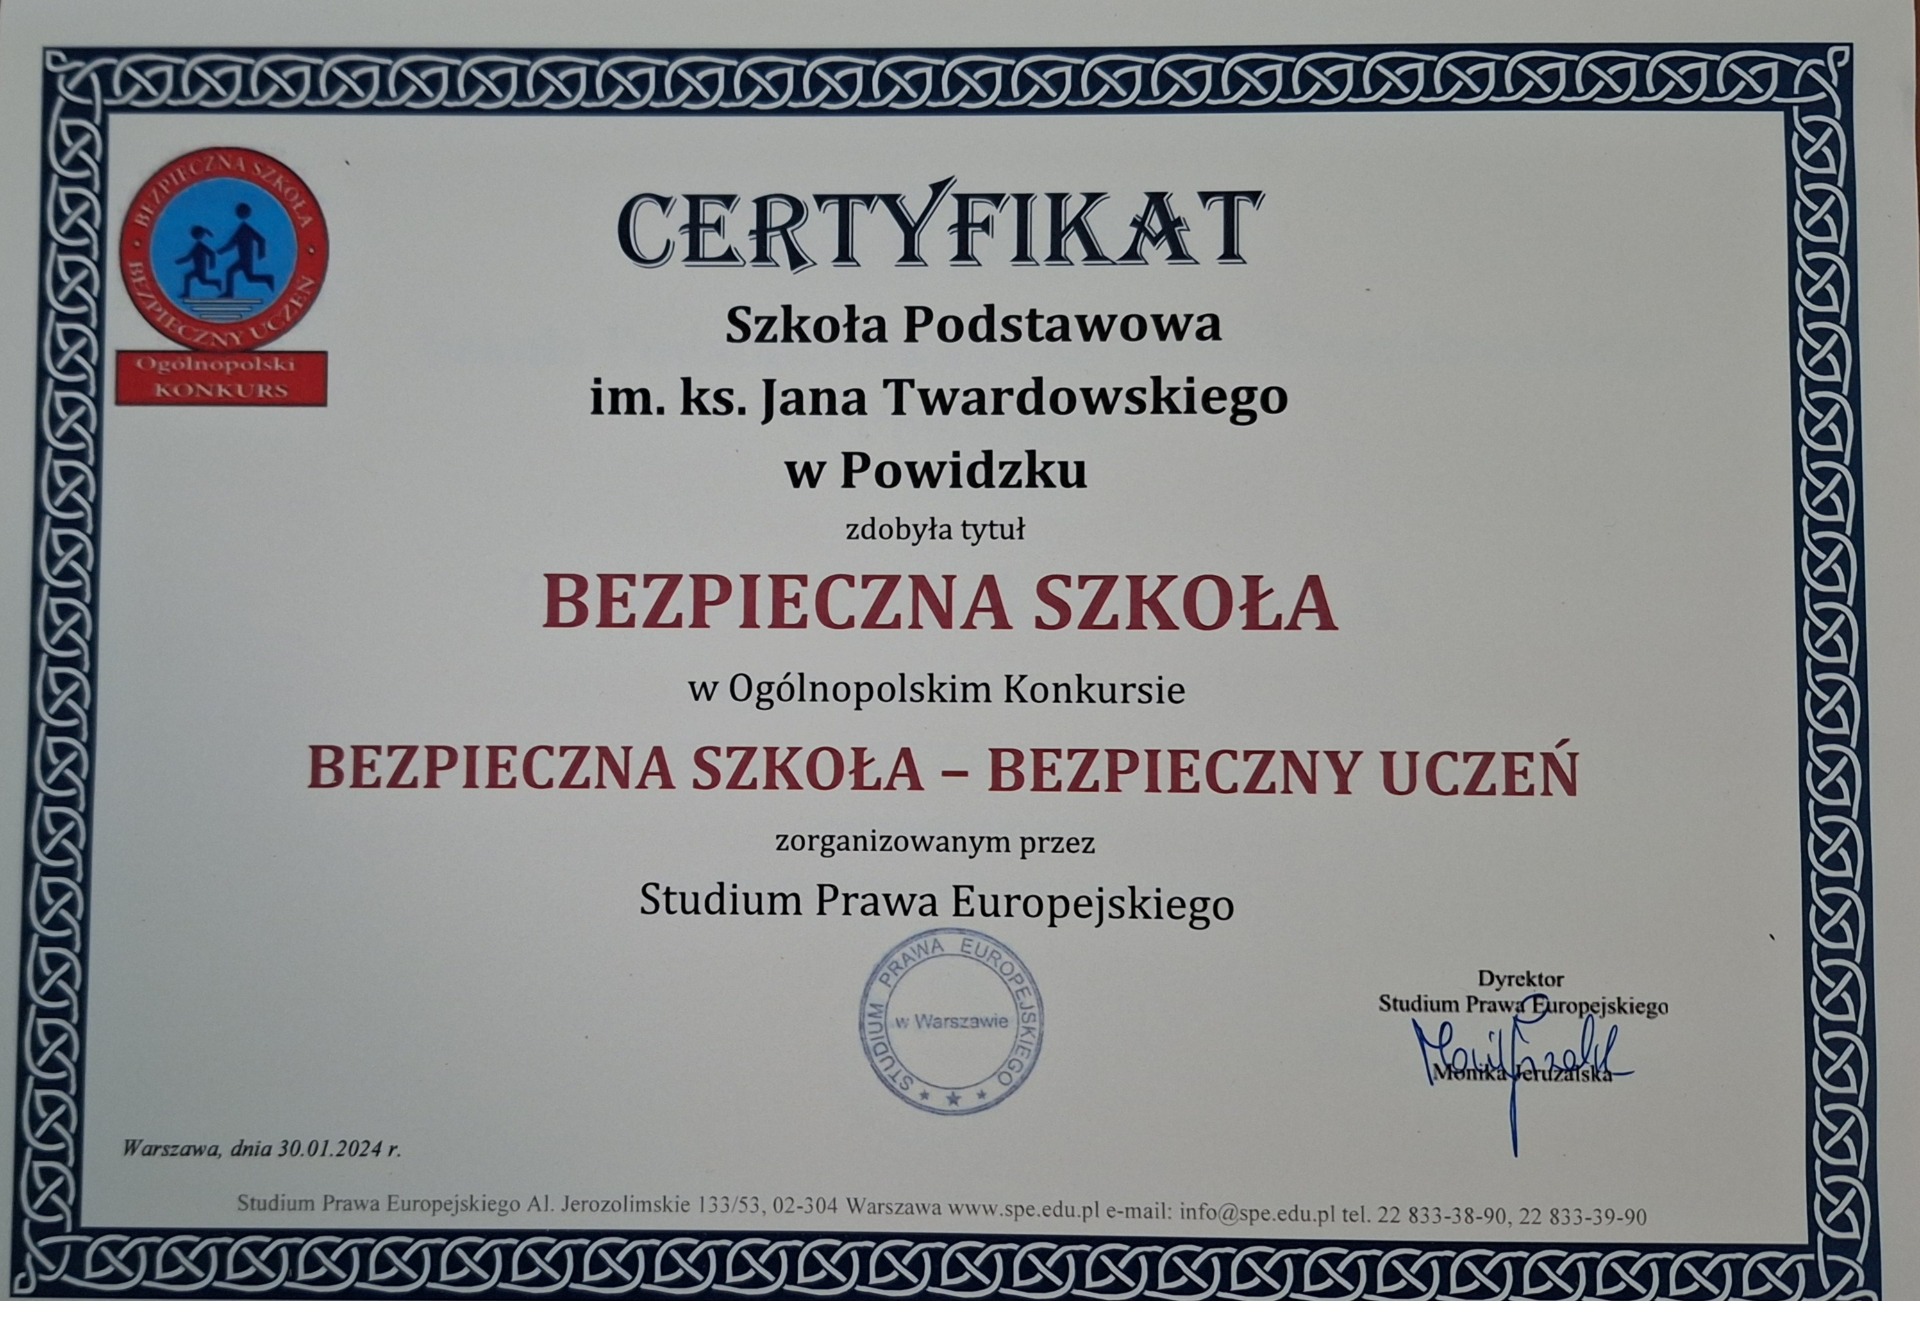 Certyfikat "BEZPIECZNA SZKOŁA" - Obrazek 2